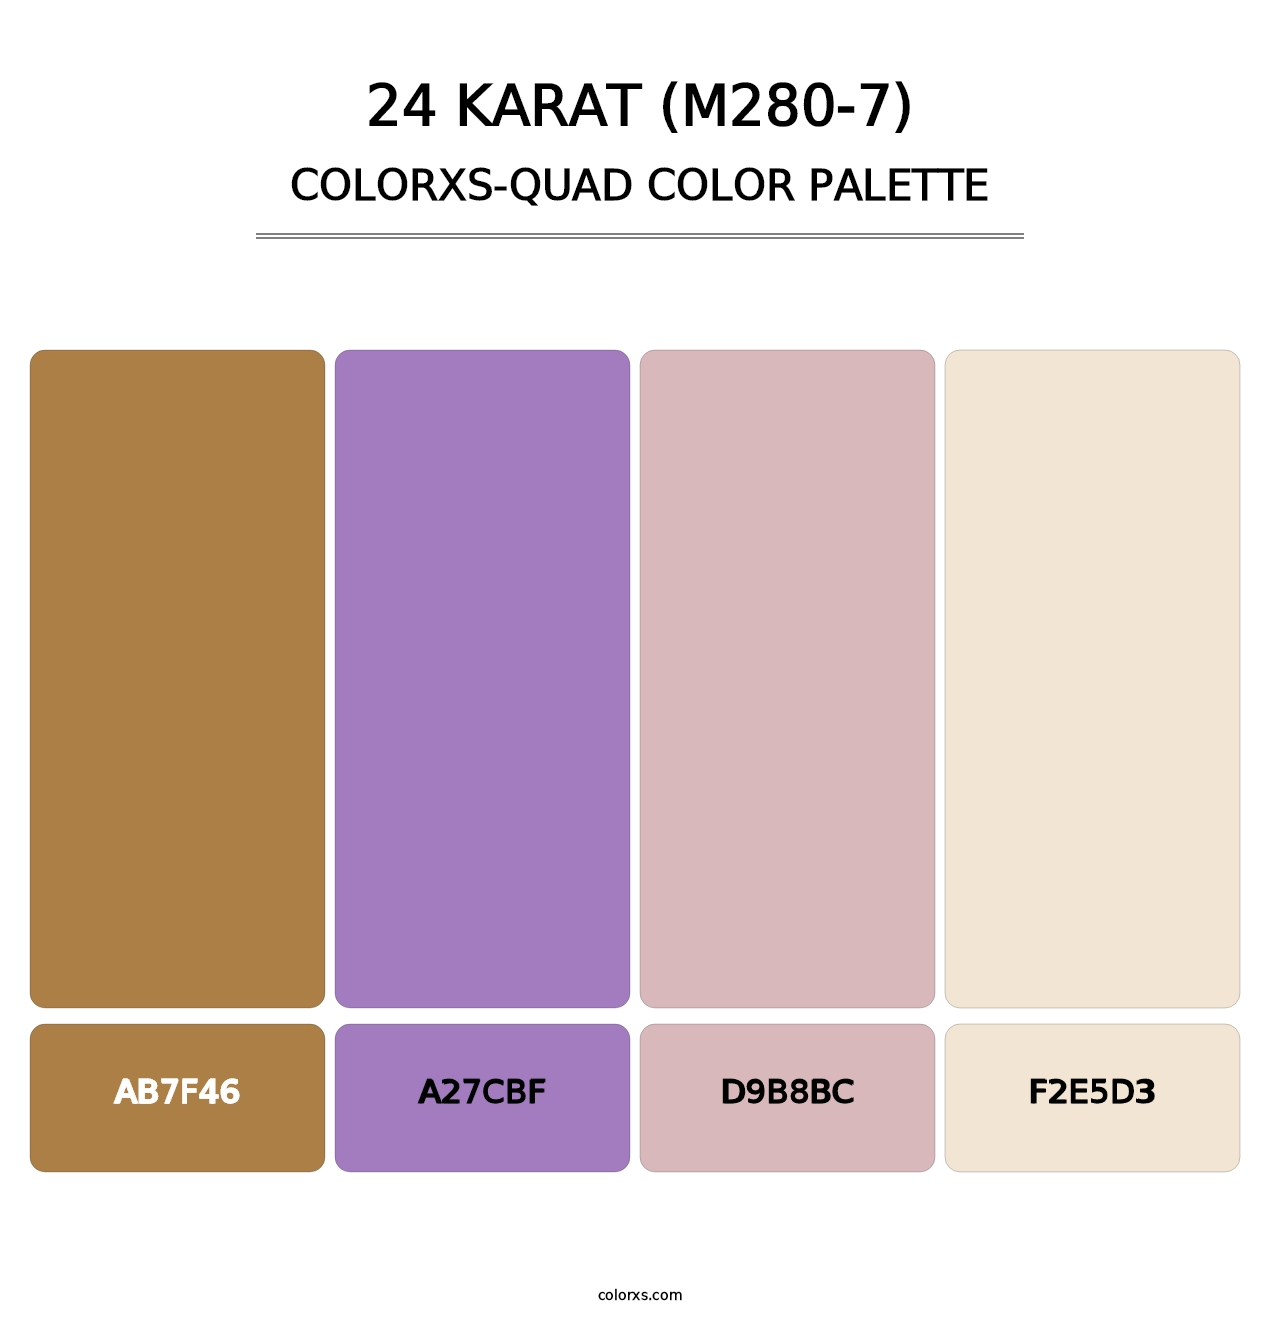 24 Karat (M280-7) - Colorxs Quad Palette